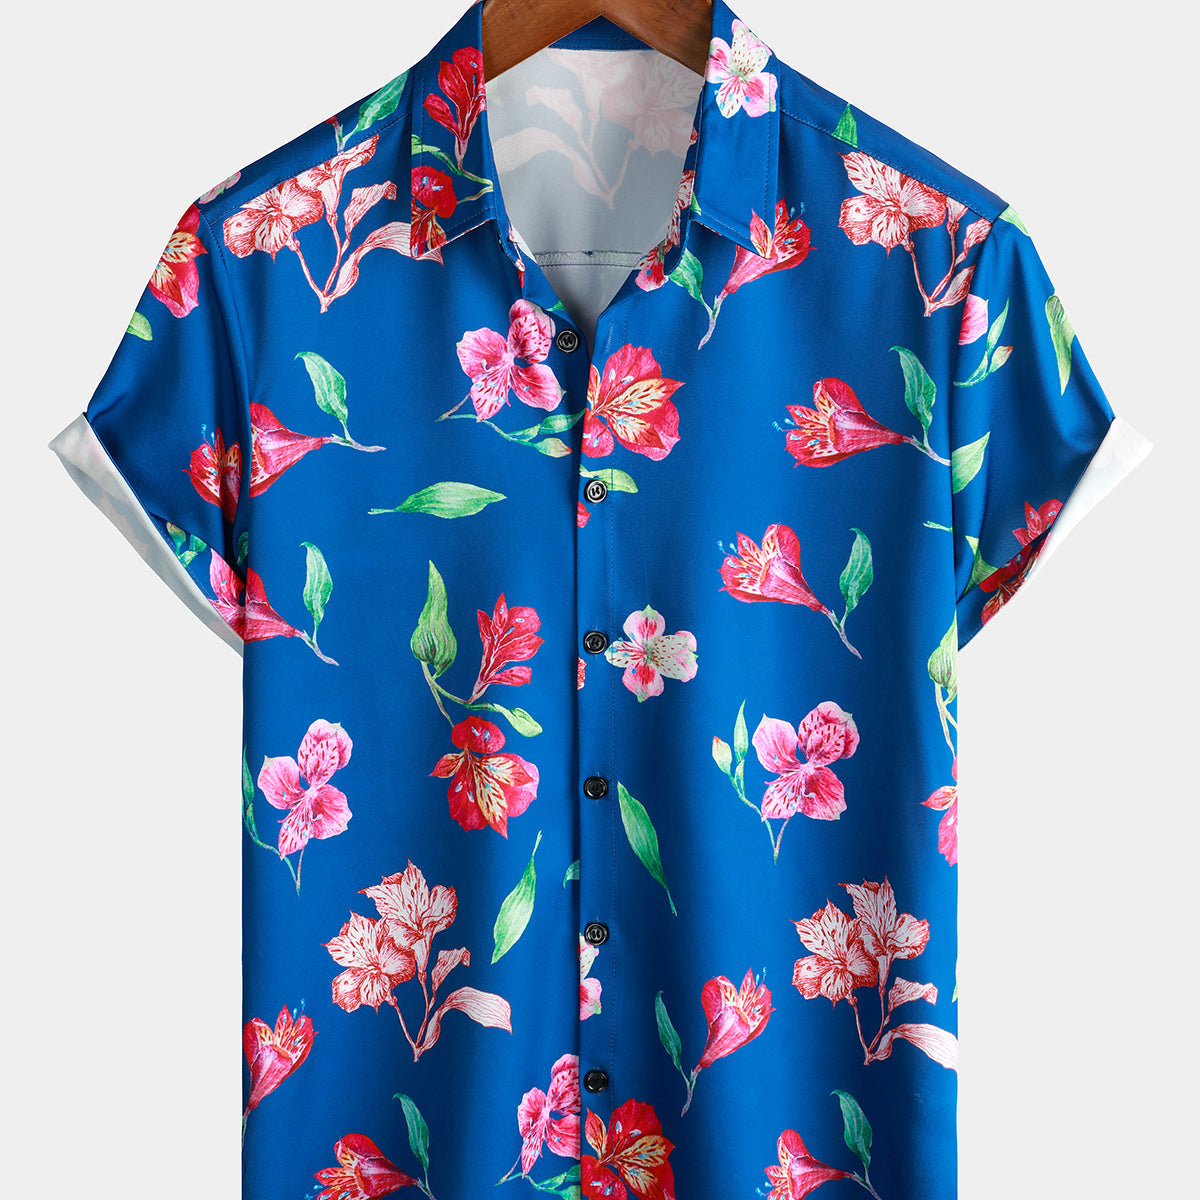 Camisa hawaiana de playa artística de manga corta con botones y flores de verano azul floral para hombre